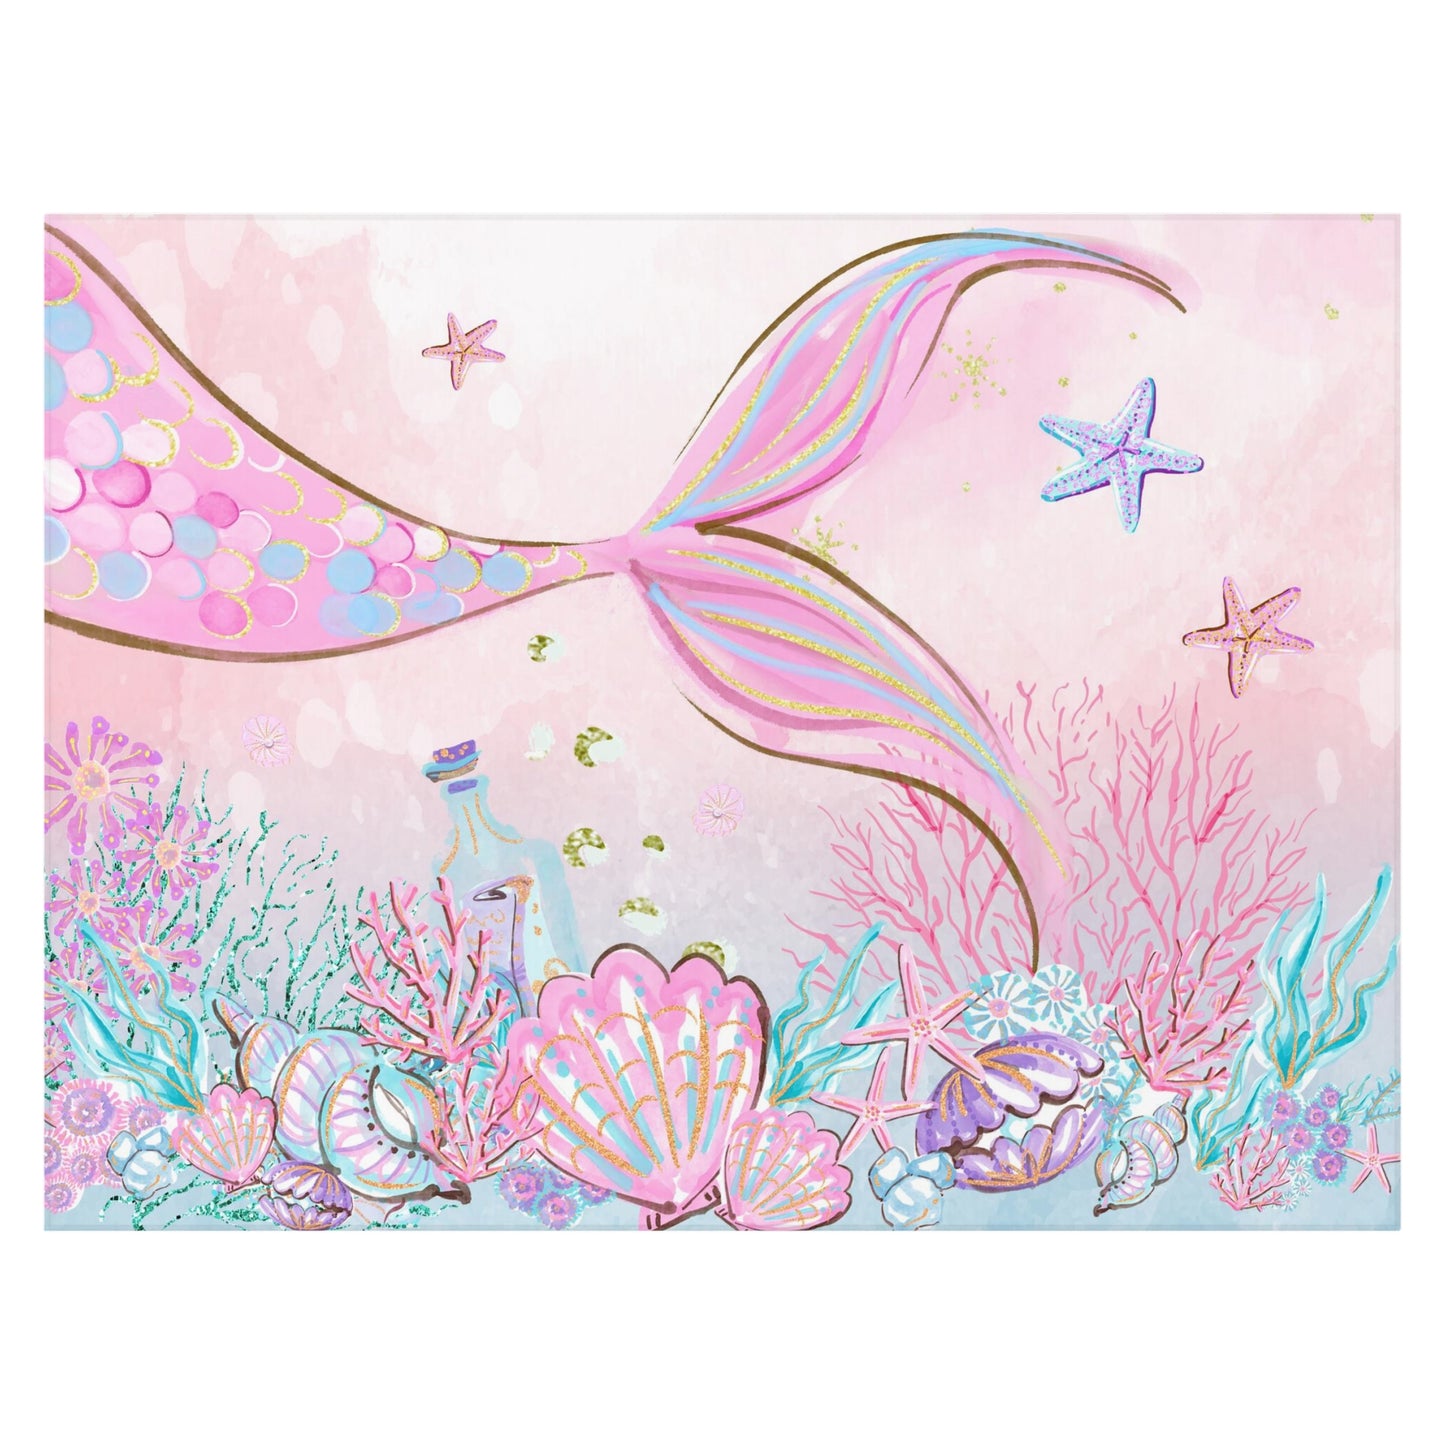 Little Mermaid Rug, Pink mermaid Anti-Slip backing, Mermaid room decor - Pink Mermaid